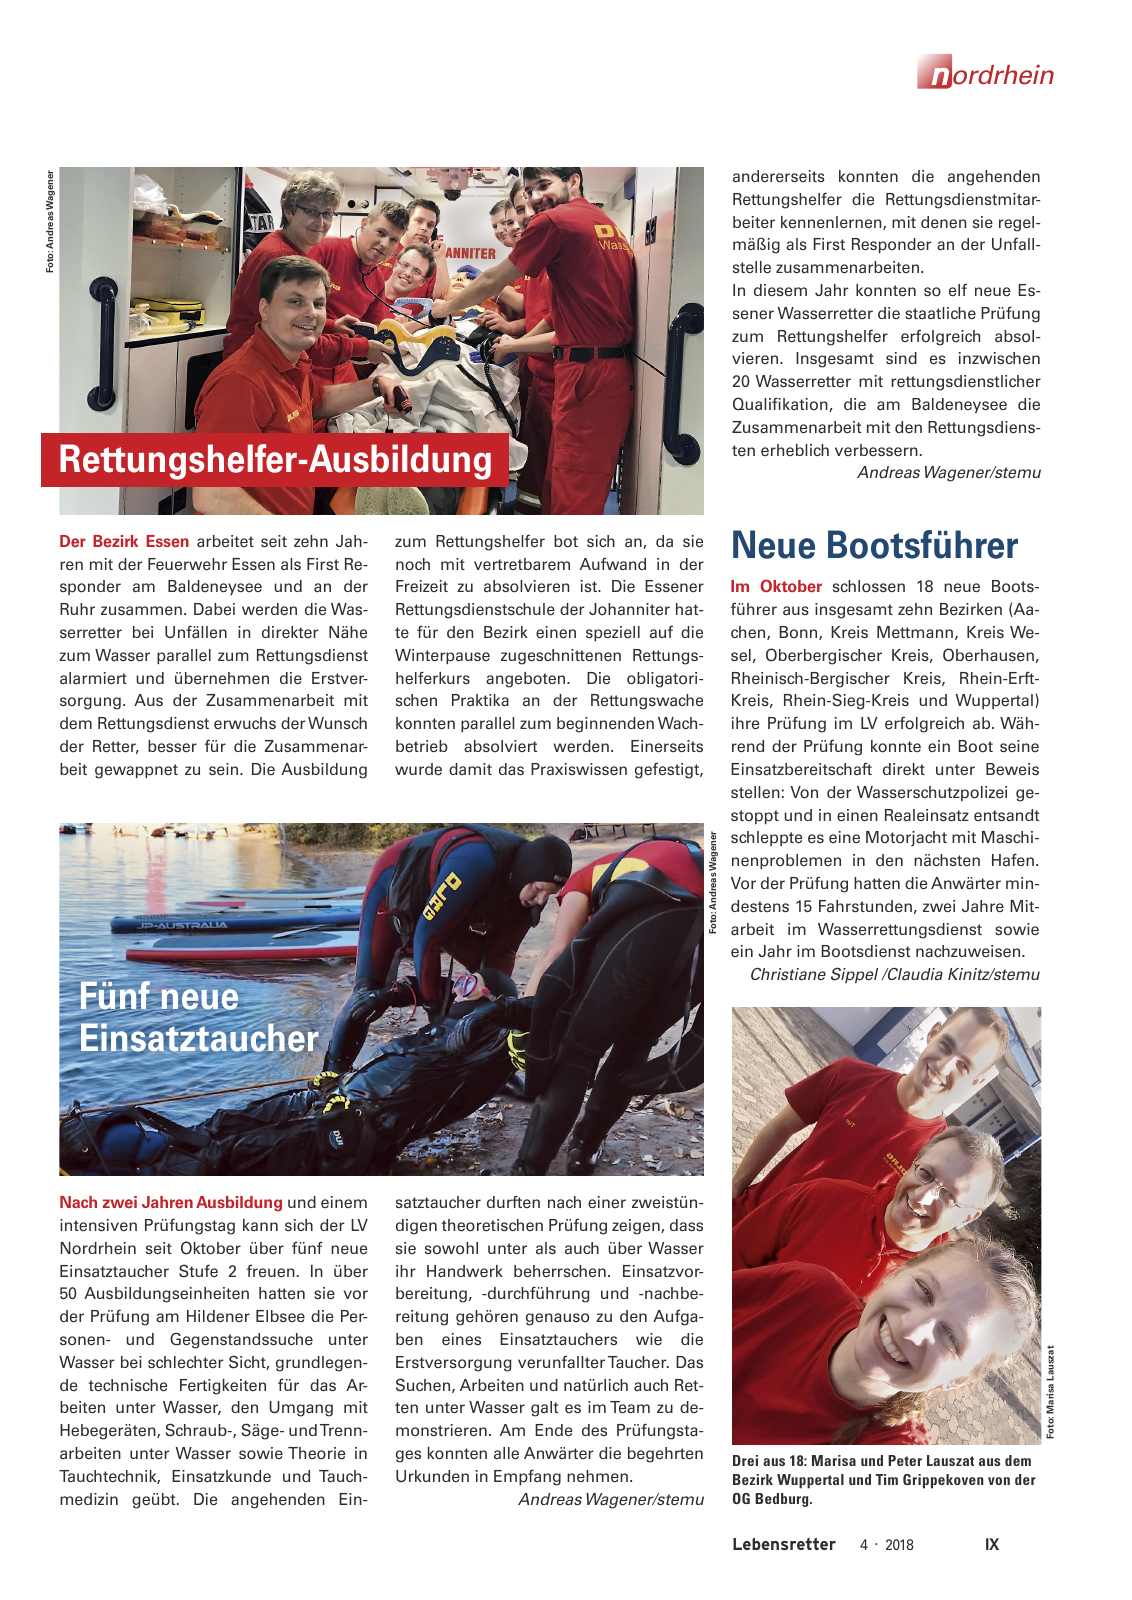 Vorschau Lebensretter 4/2018 - Regionalausgabe Nordrhein Seite 11